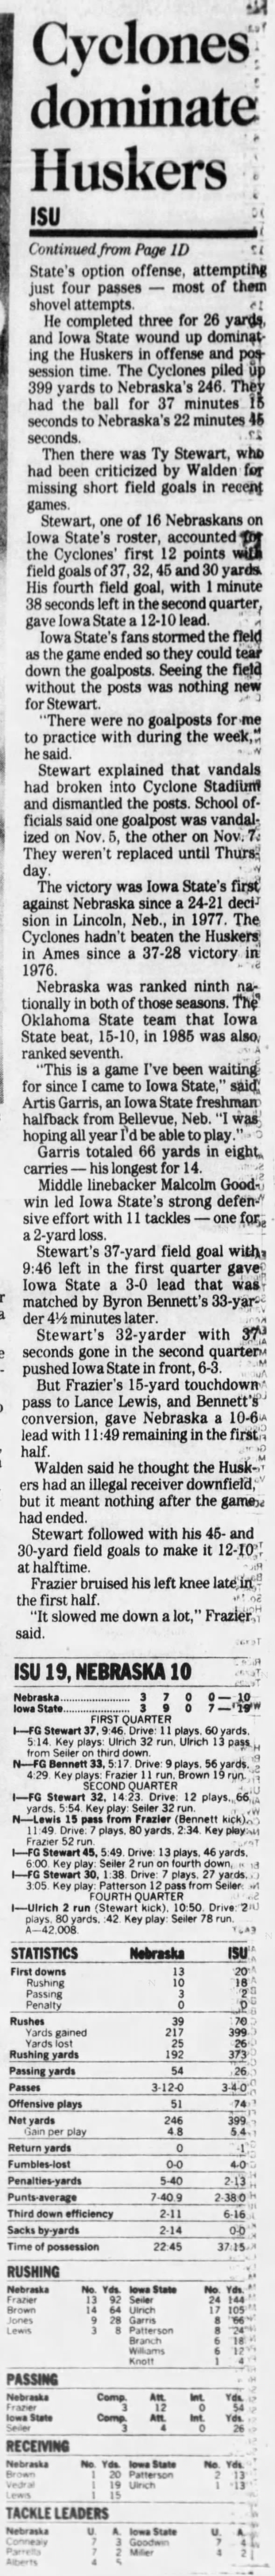 1992 Nebraska-Iowa State football, DMR2